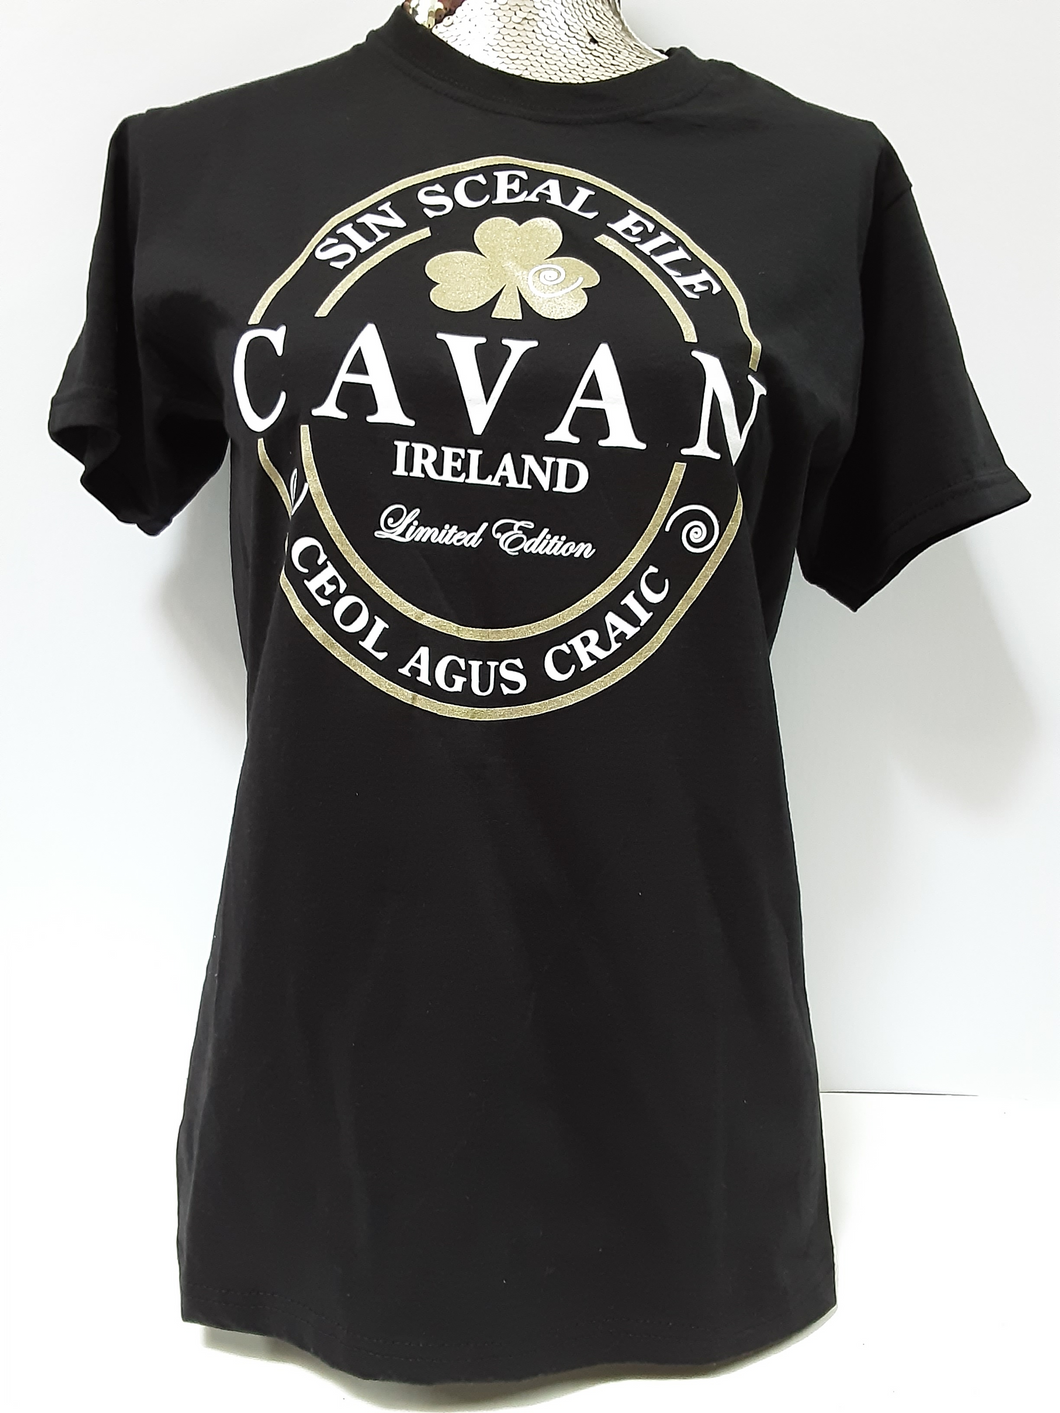 Cavan Ireland limited edition tee shirt